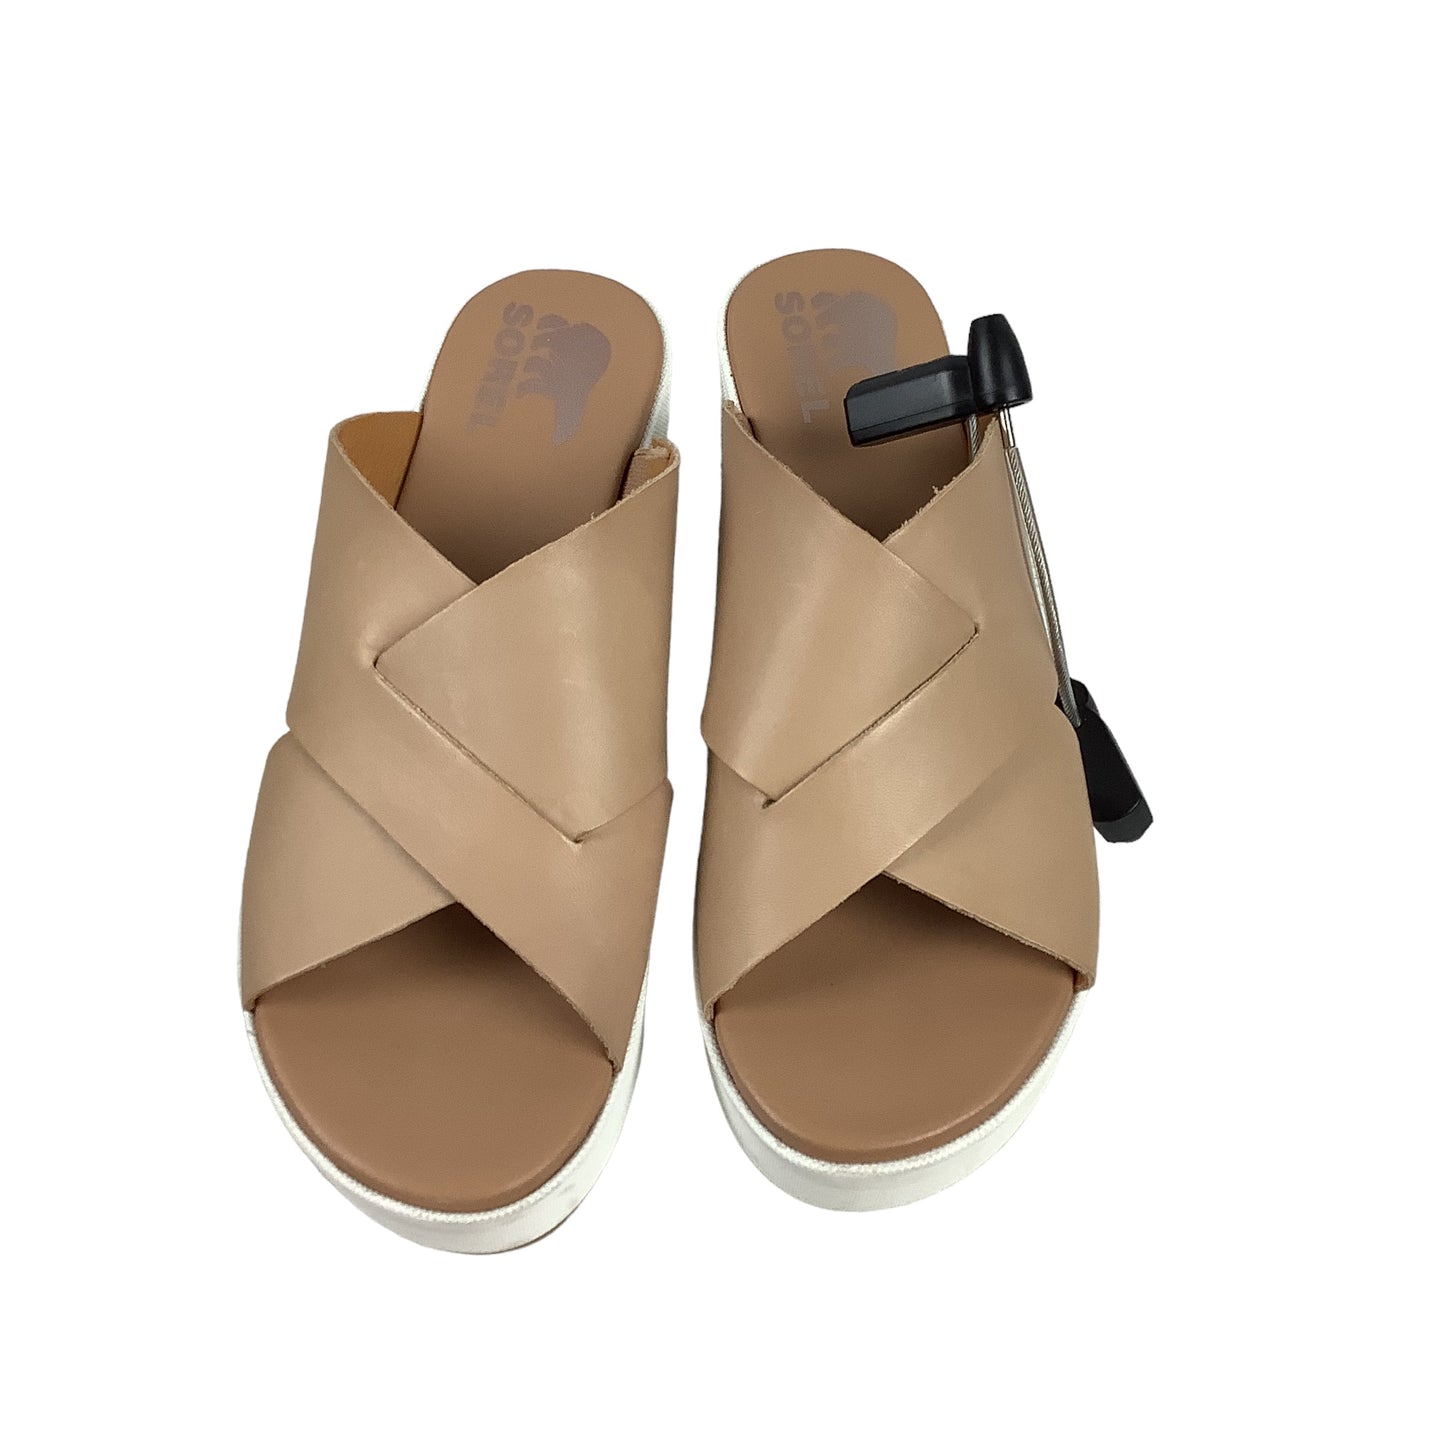 Sandals Designer By Sorel  Size: 7.5